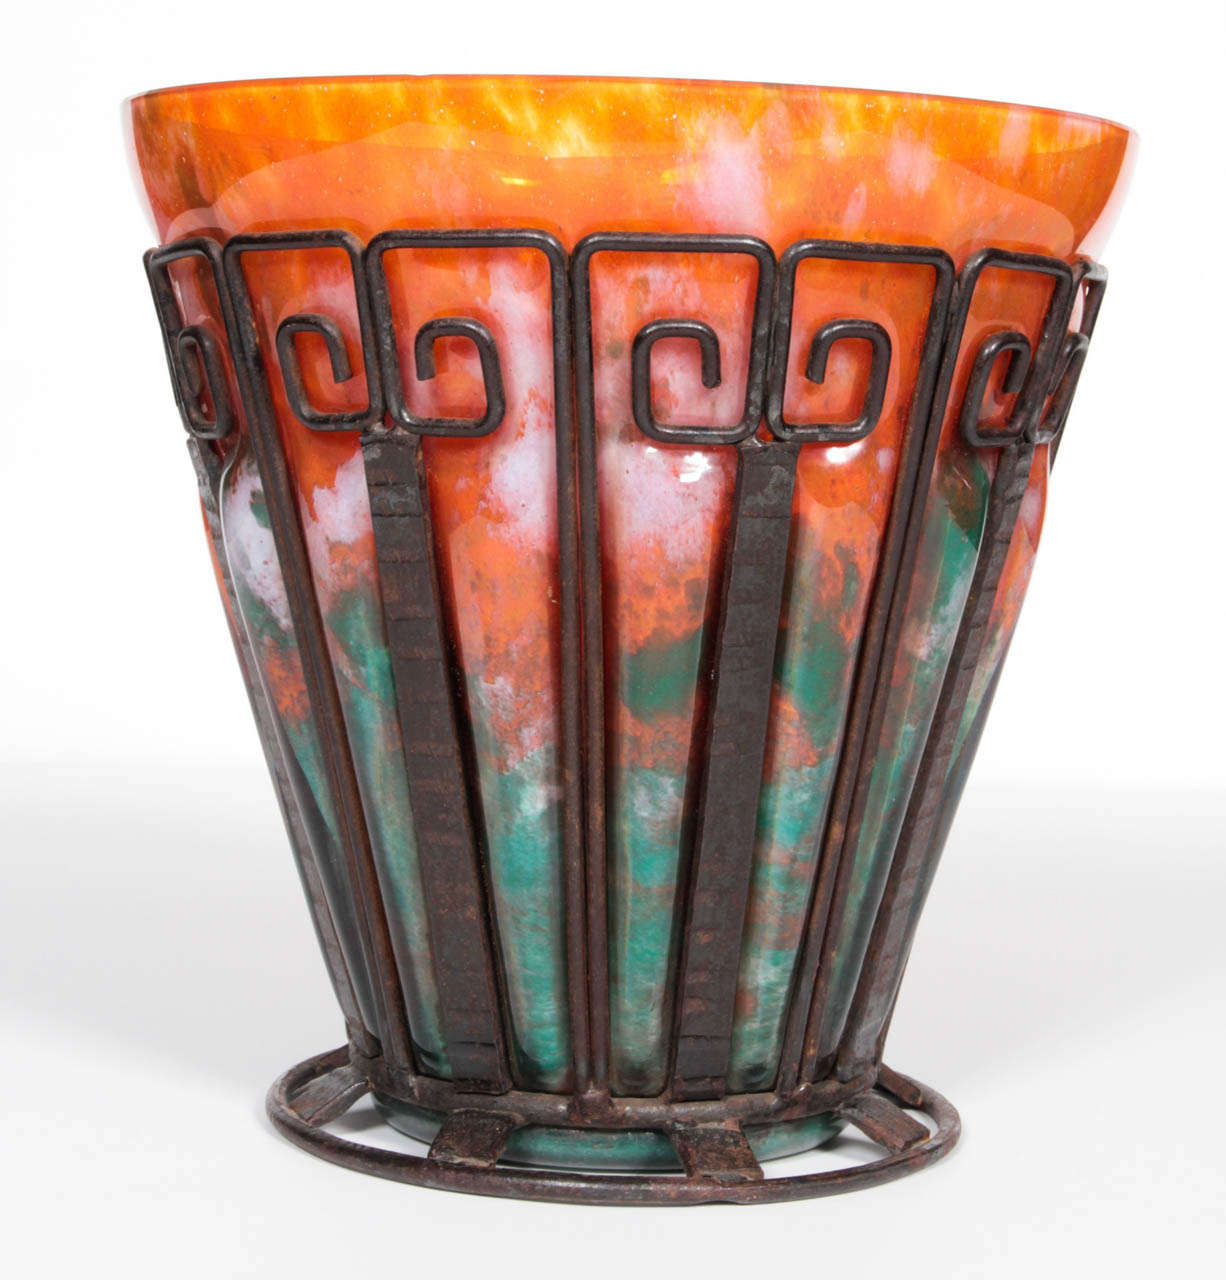 Un vase en verre Art Déco Lorrain Nancy / École de Nancy d'origine, encadré de fer forgé martelé à la main, avec un insert en verre tacheté soufflé à la main dans un cadre en verre
 des nuances colorées d'orange, de bleu/vert avec des touches de